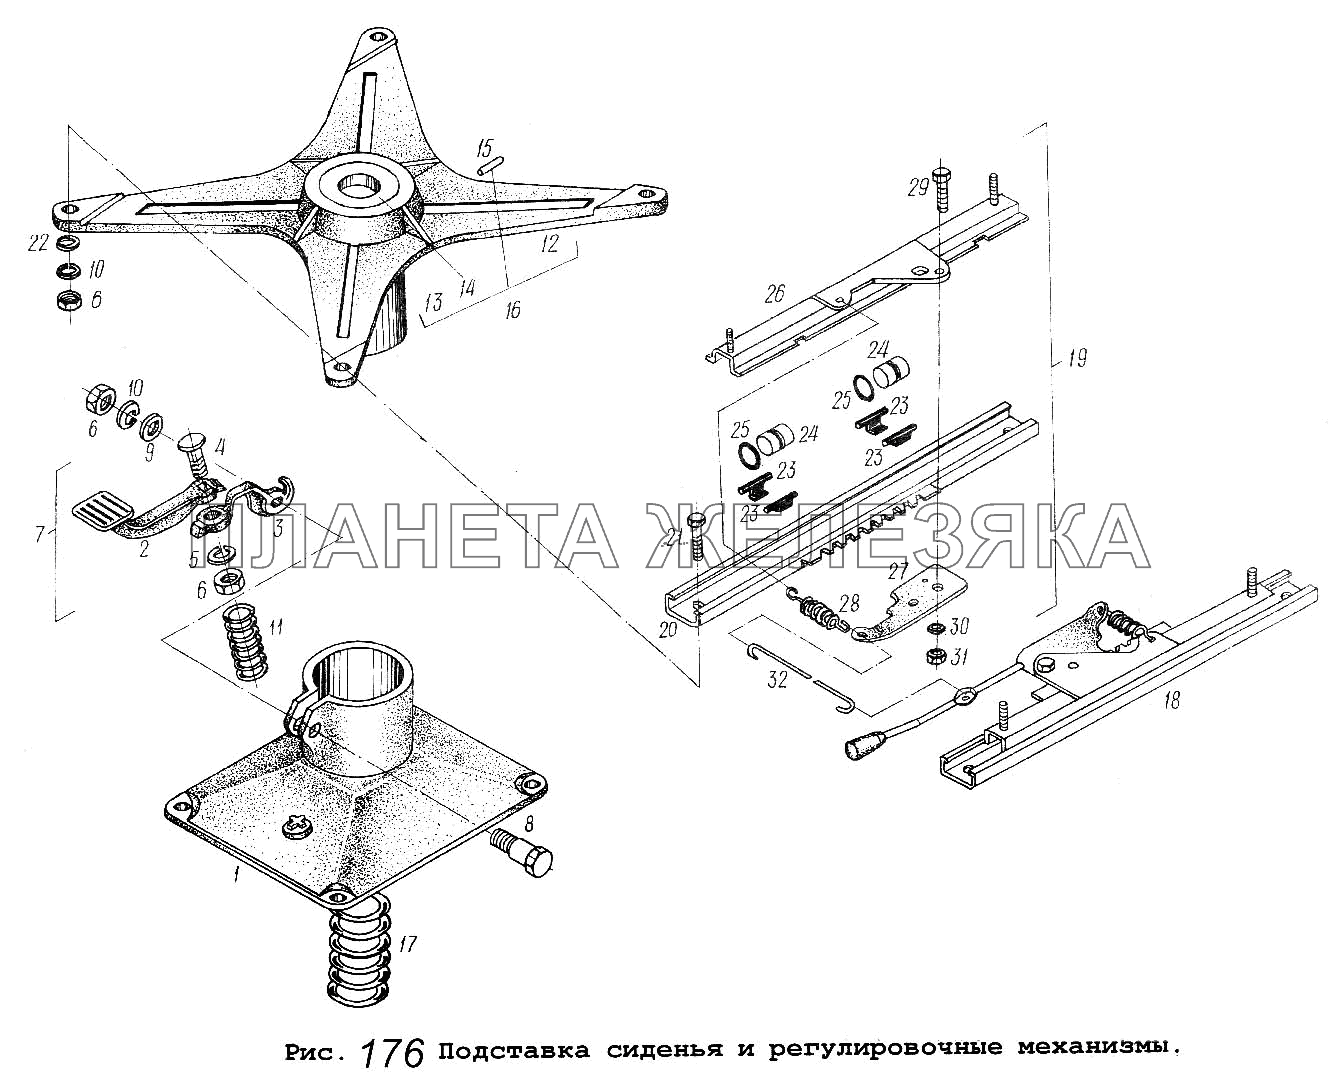 Подставка сиденья и регулировочные механизмы МАЗ-54323